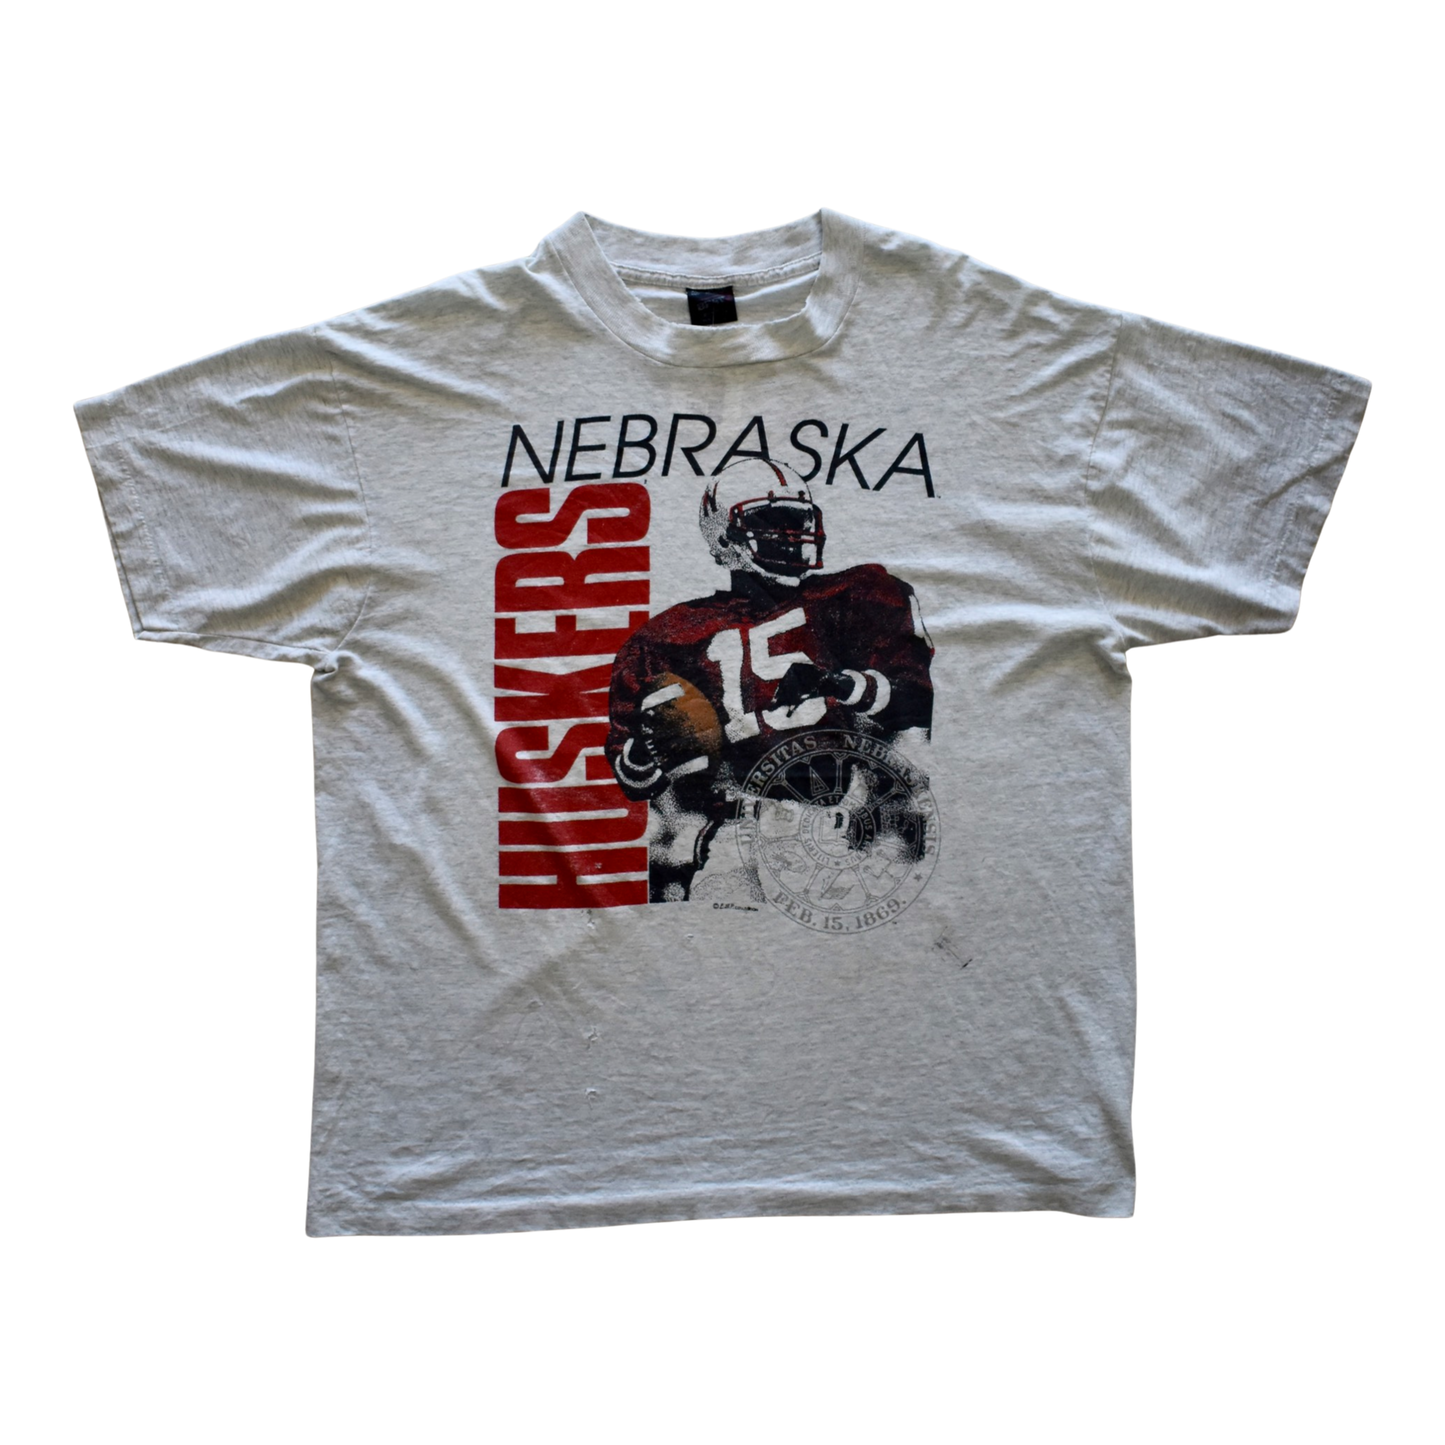 Vintage 90s Nebraska Huskers Football Tee XL